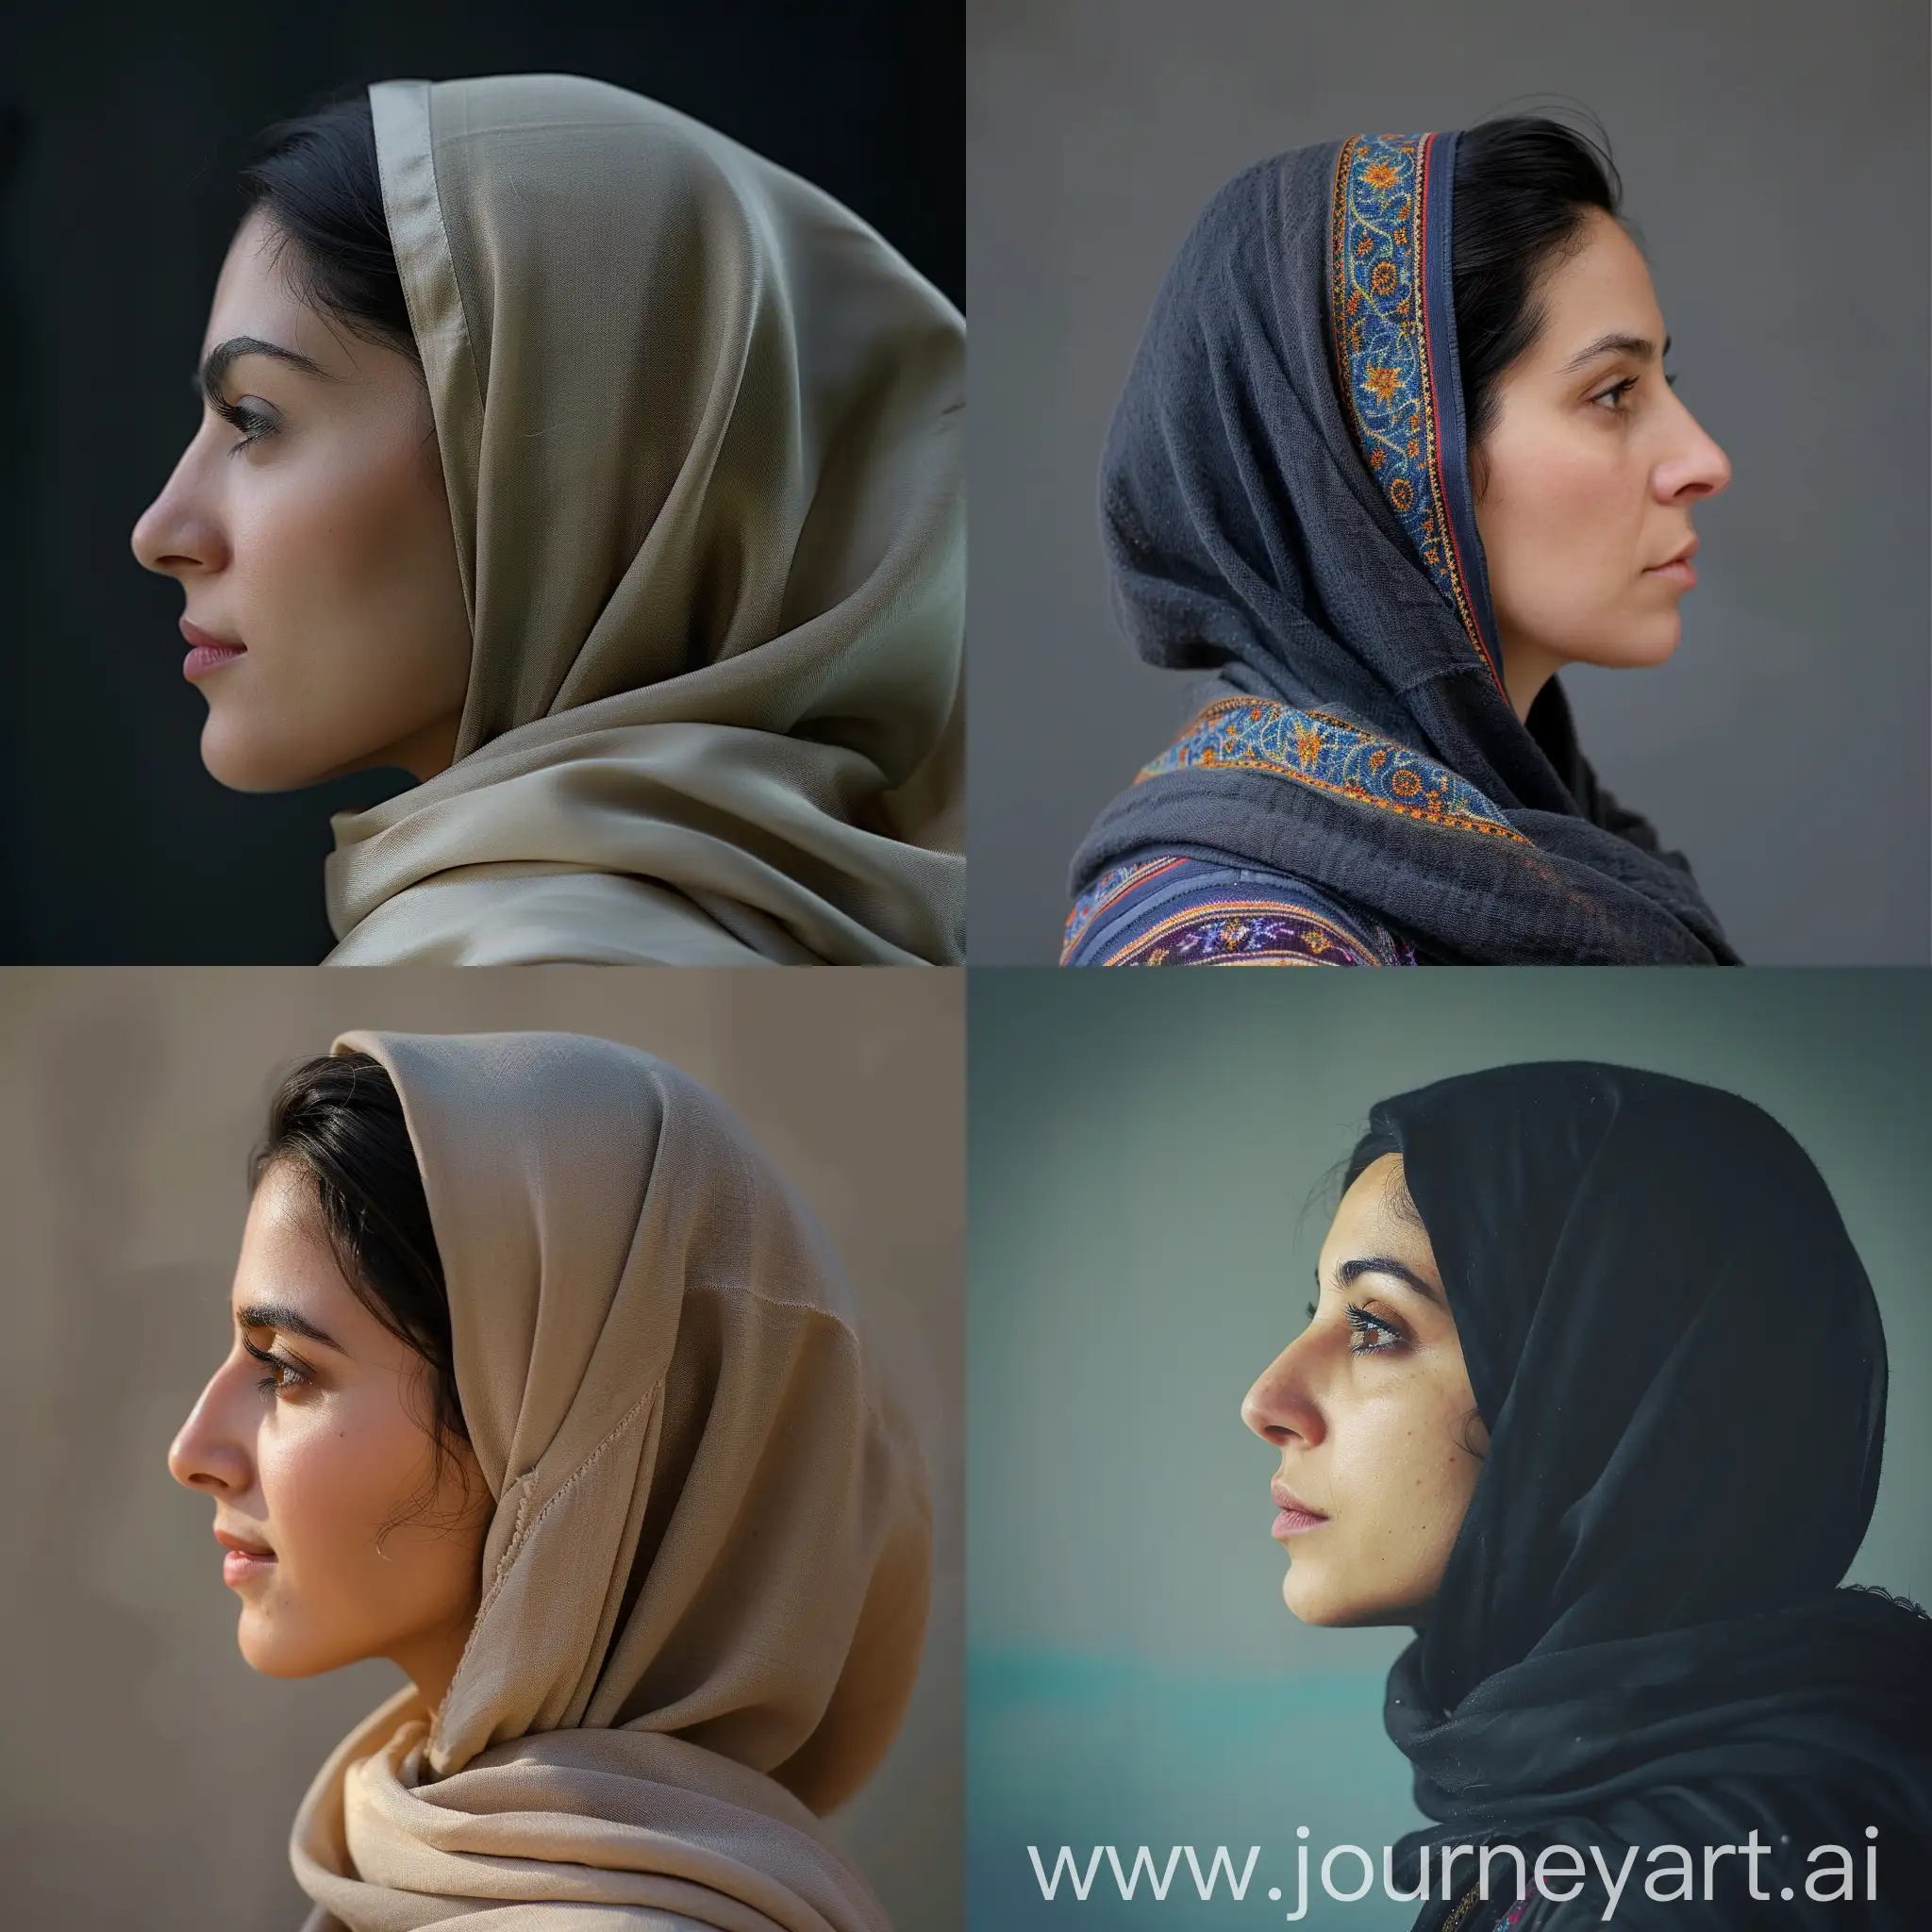 Iranian woman in profile and wearing hijab